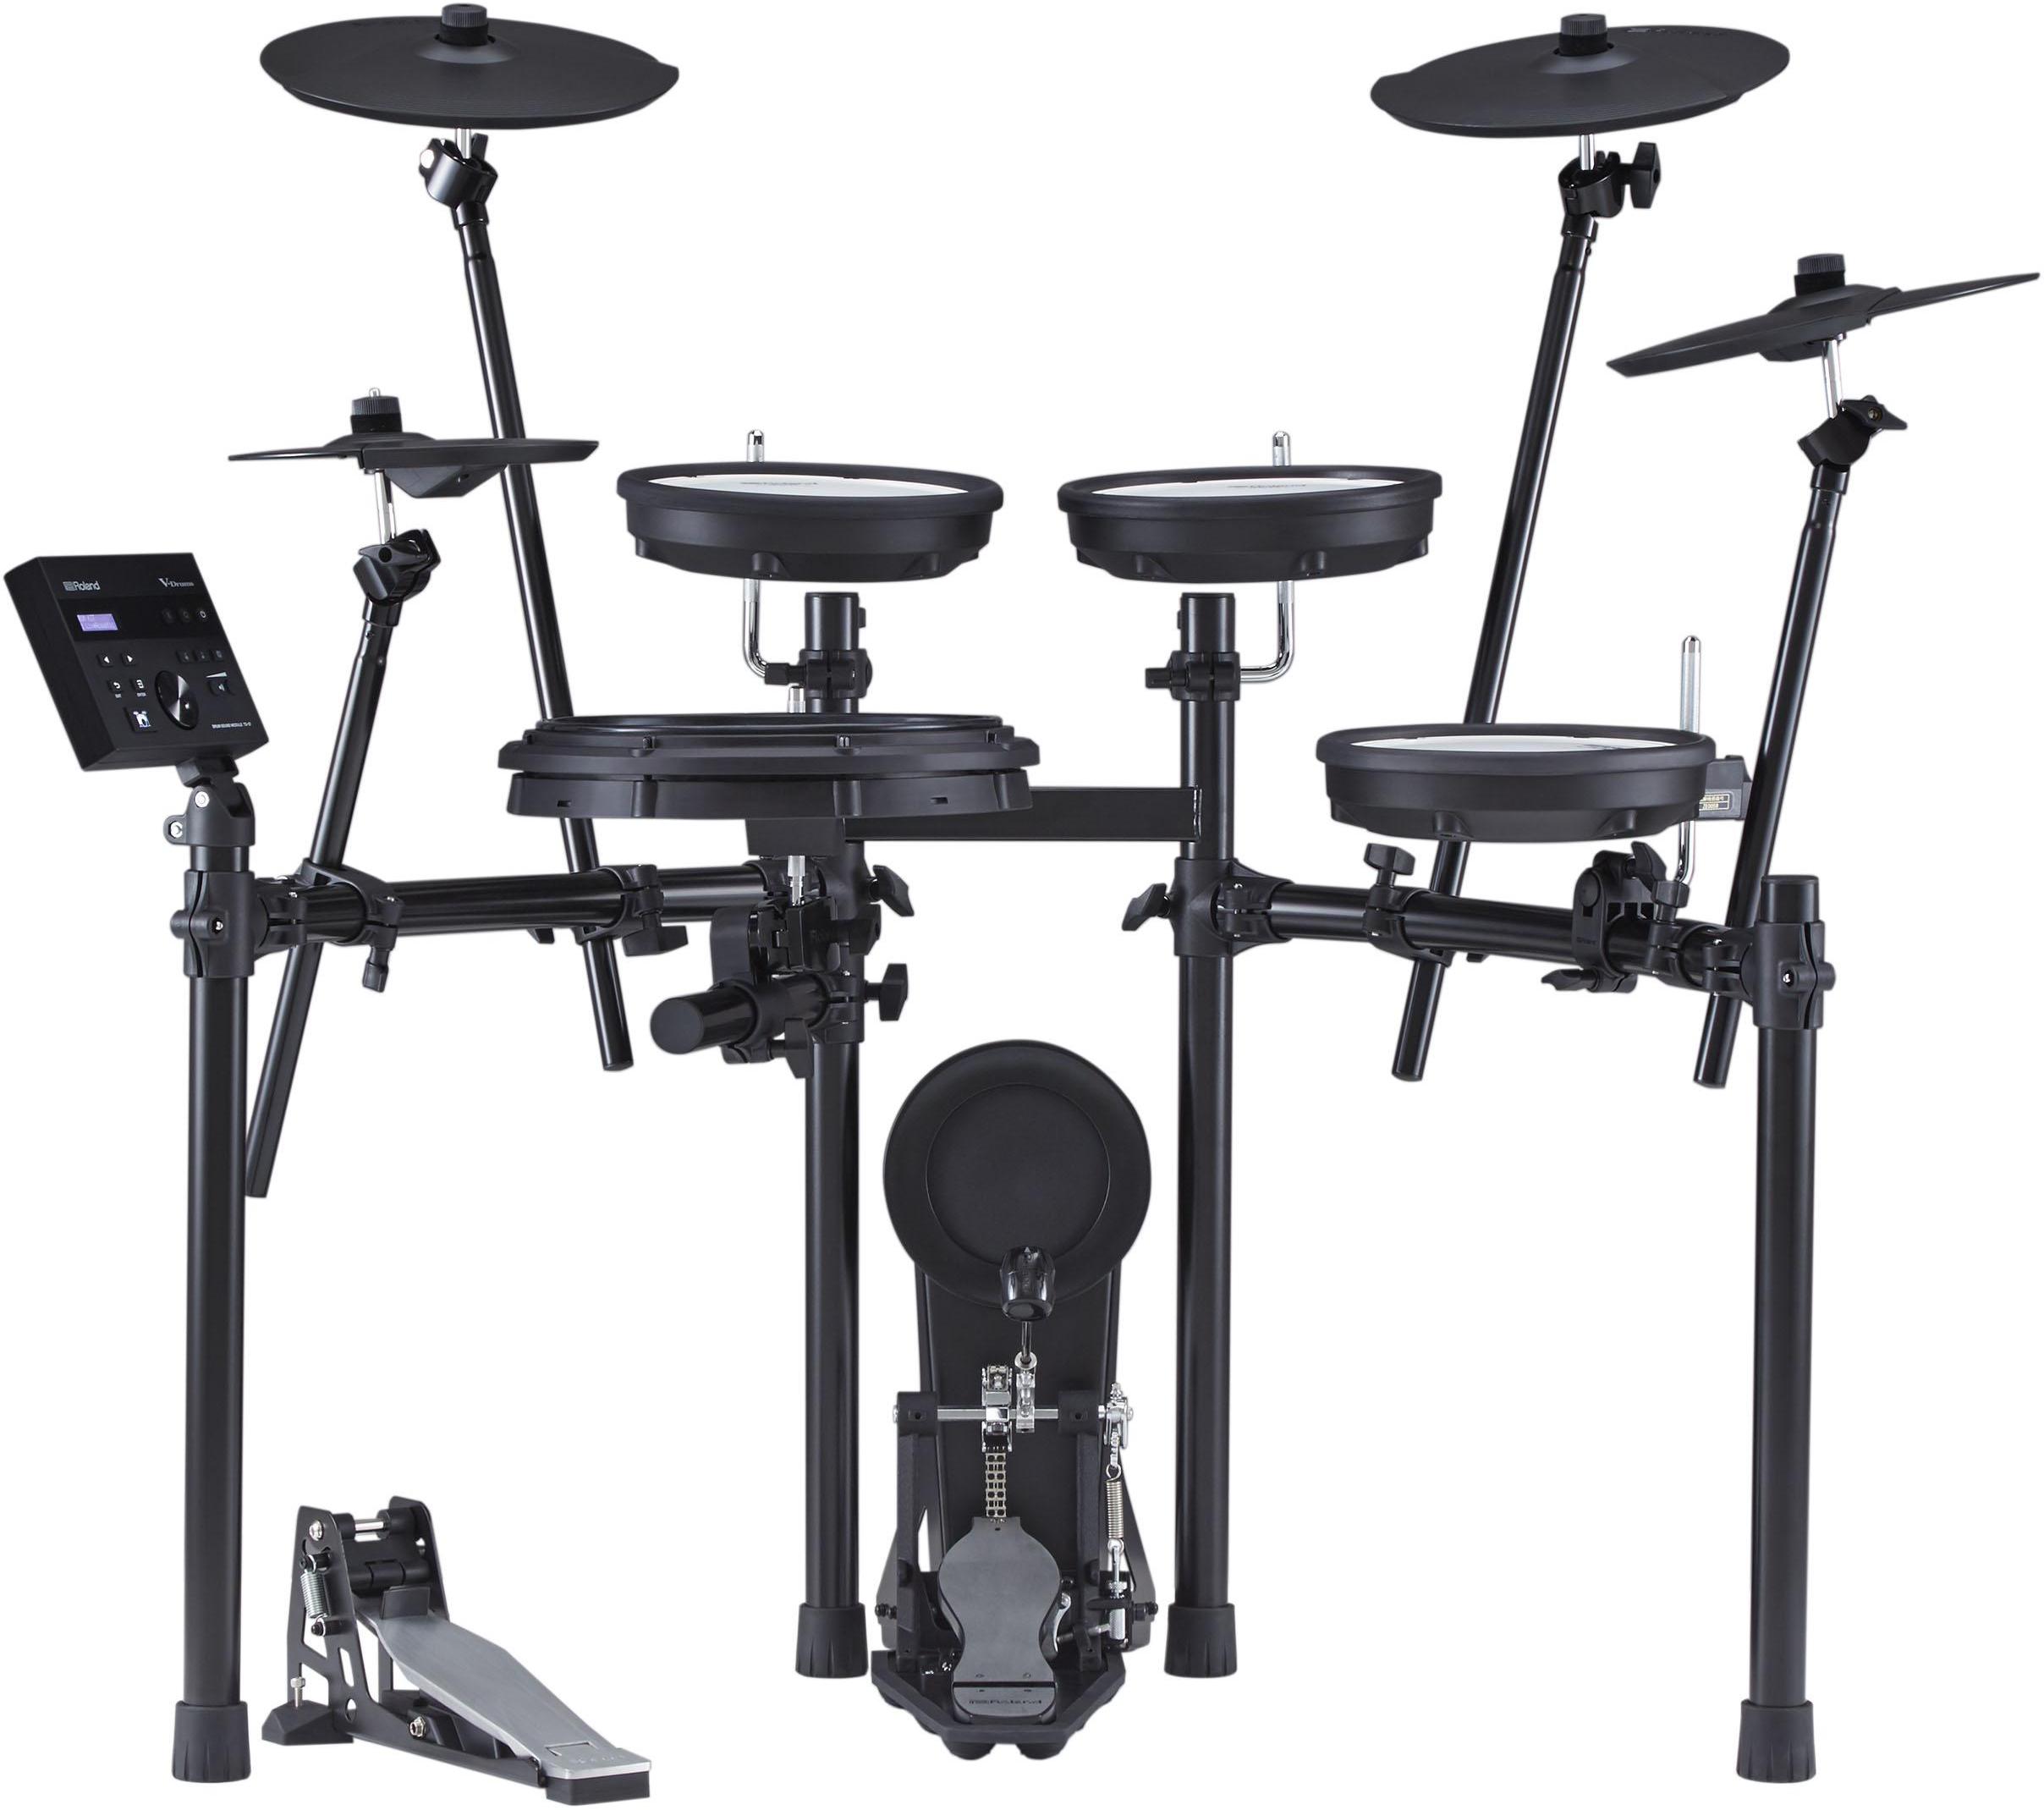 Electronic drum kit & set Roland TD-07KX V-Drums Kit